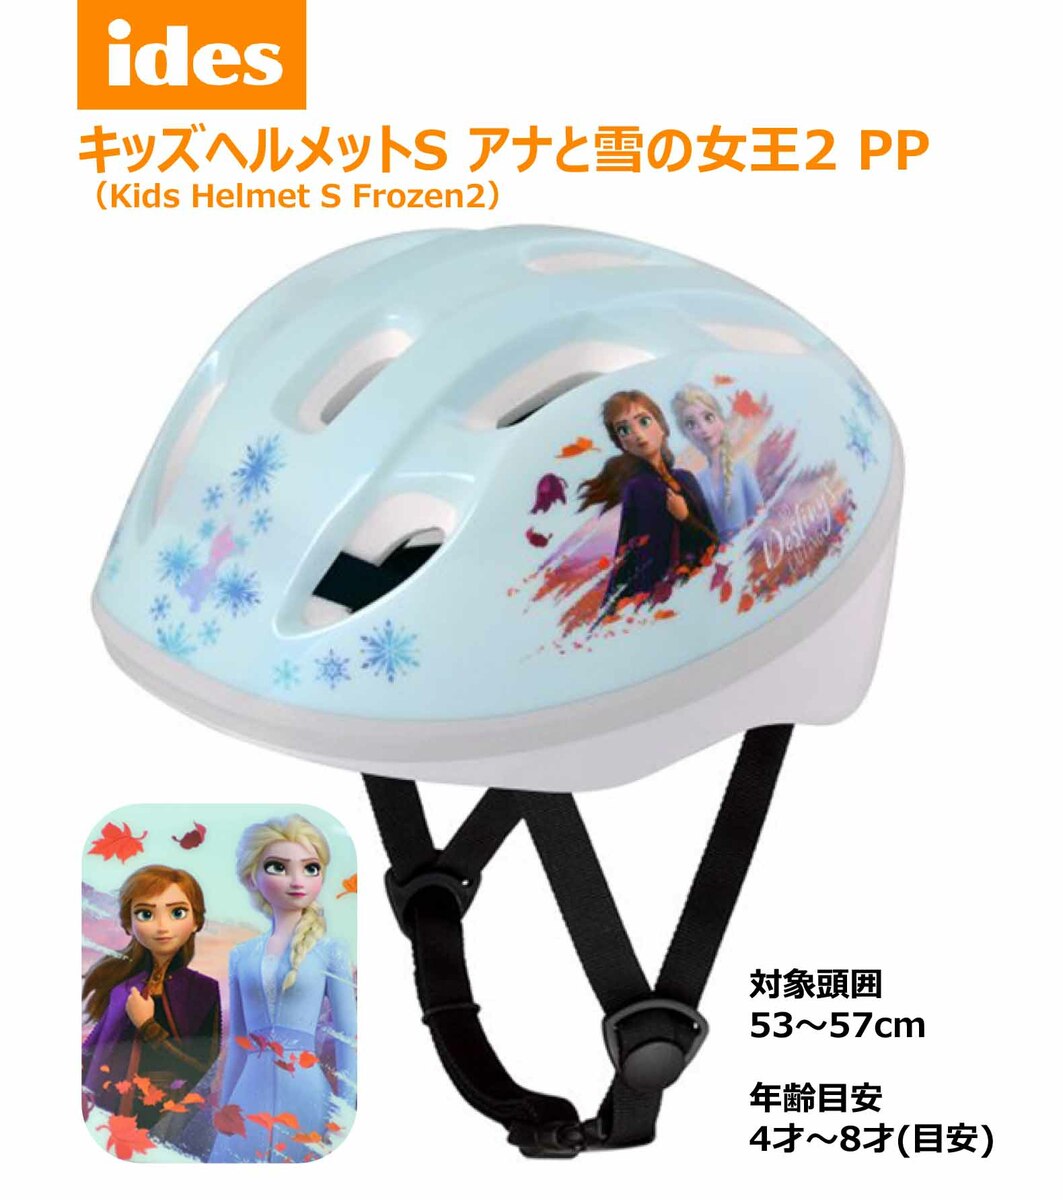 キッズ ヘルメット S アナと雪の女王2 PP アナ雪 子供用 幼児 ディズニー 子供乗せ チャイルドシート SG 基準画像